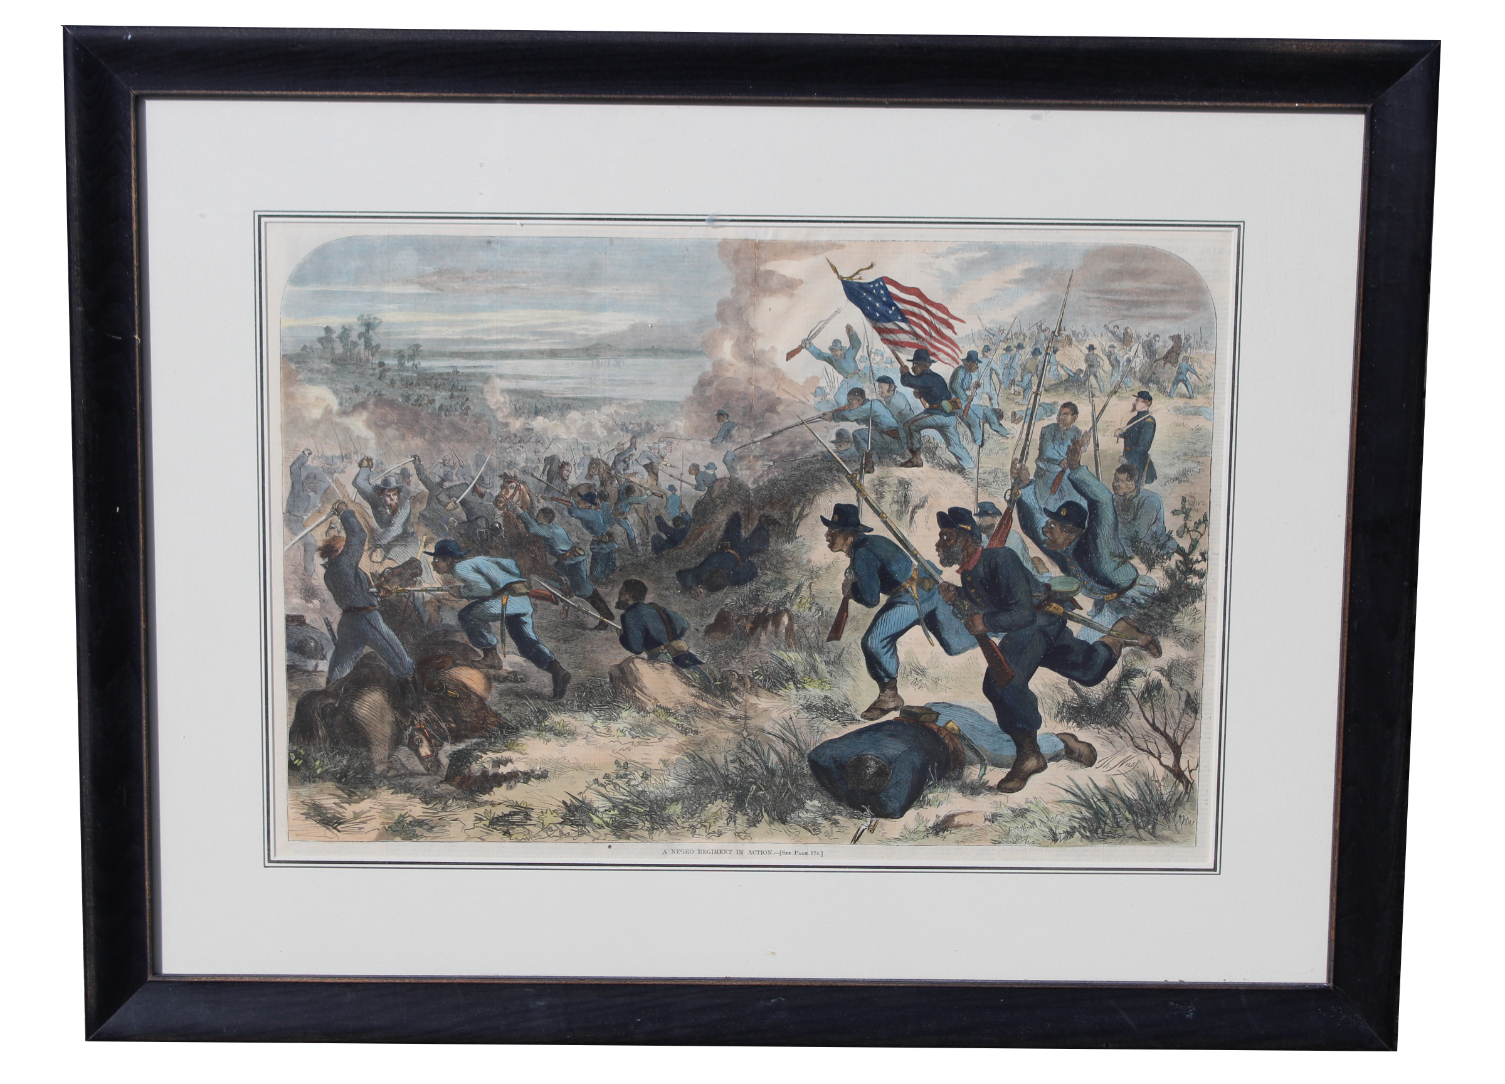 Harper's Weekly - "Negro Regiment in Action"